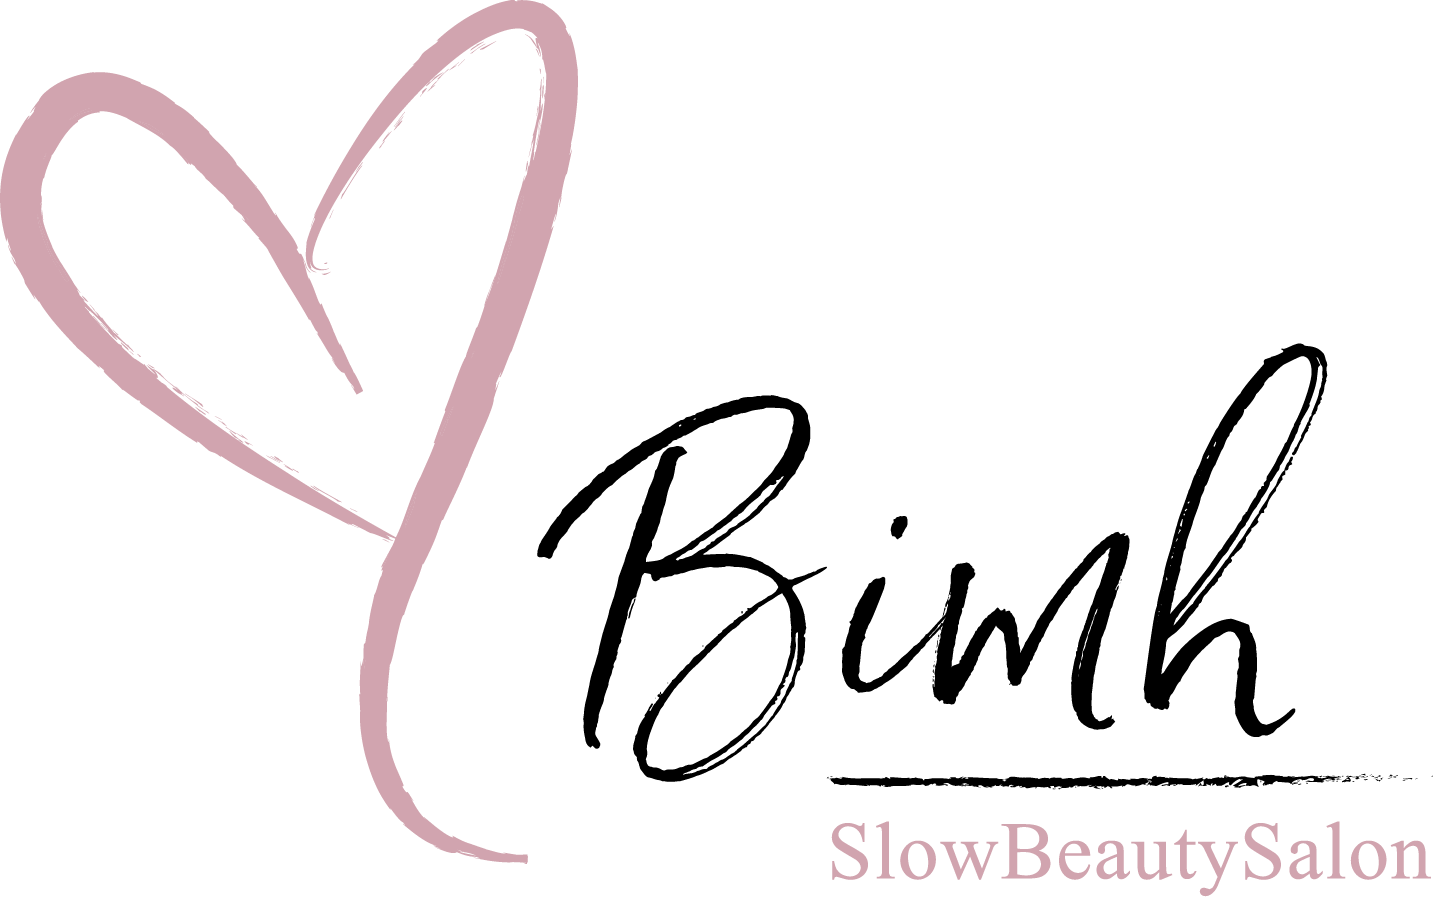 Slowbeauty salon Bimh